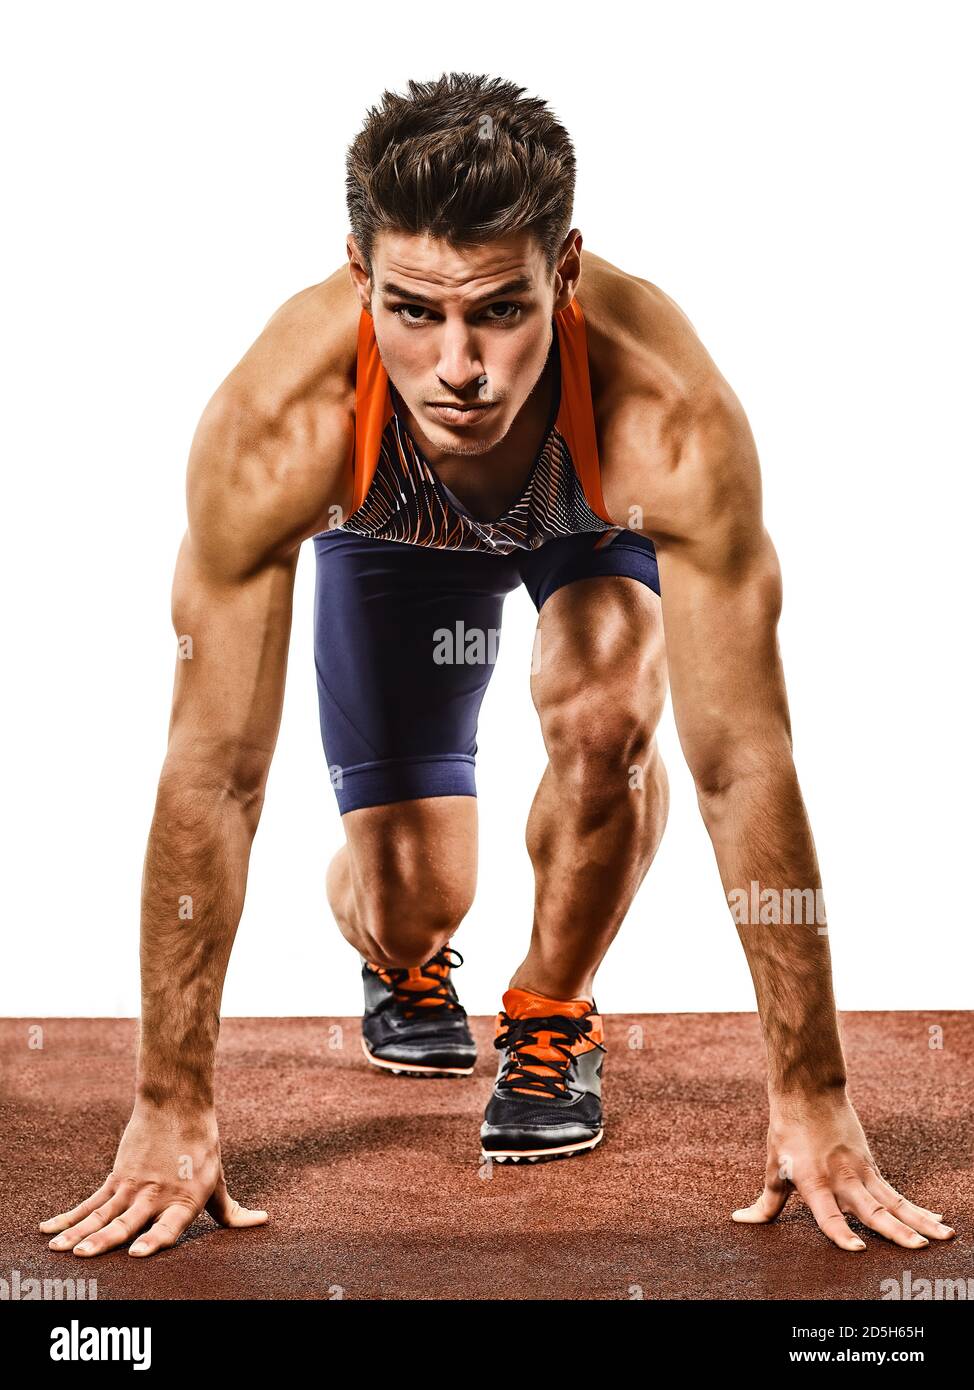 Ein junger kaukasischer Mann, der im Studio sprintete, als Leichtathletikläufer, der Sprinter betreibt, isoliert auf weißem Hintergrund Stockfoto